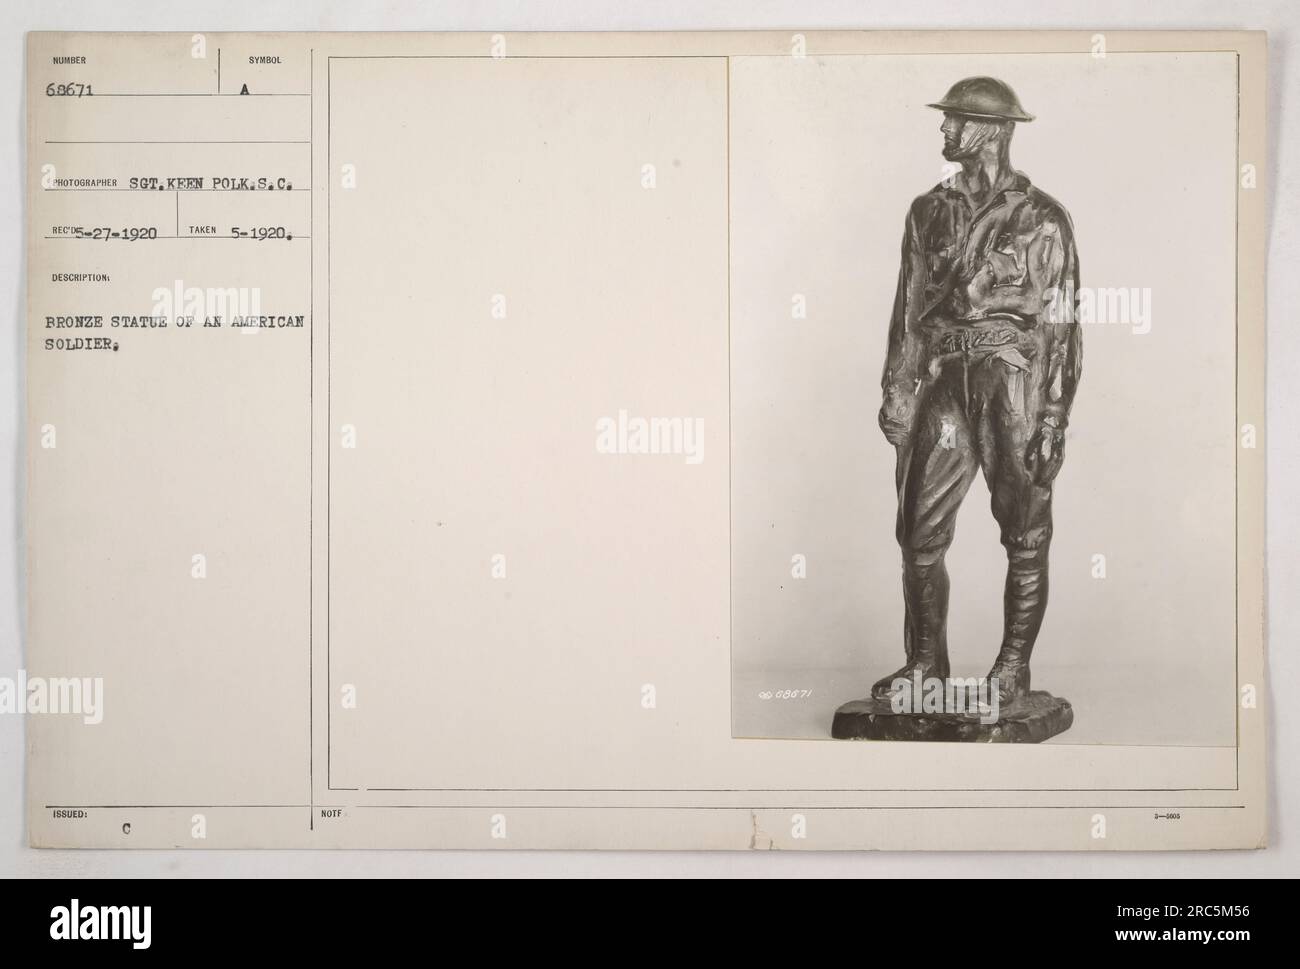 Bronzestatue eines amerikanischen Soldaten, Seriennummer 60671, fotografiert von Sergeant Ken Polk von der South Carolina Einheit. Das Bild wurde im Mai 1920 aufgenommen und zeigt eine symbolische Darstellung eines amerikanischen Soldaten. Die Statue wurde offiziell als Gedenkstätte ausgestellt, mit der Notifizierung Nummer 9008871. Stockfoto